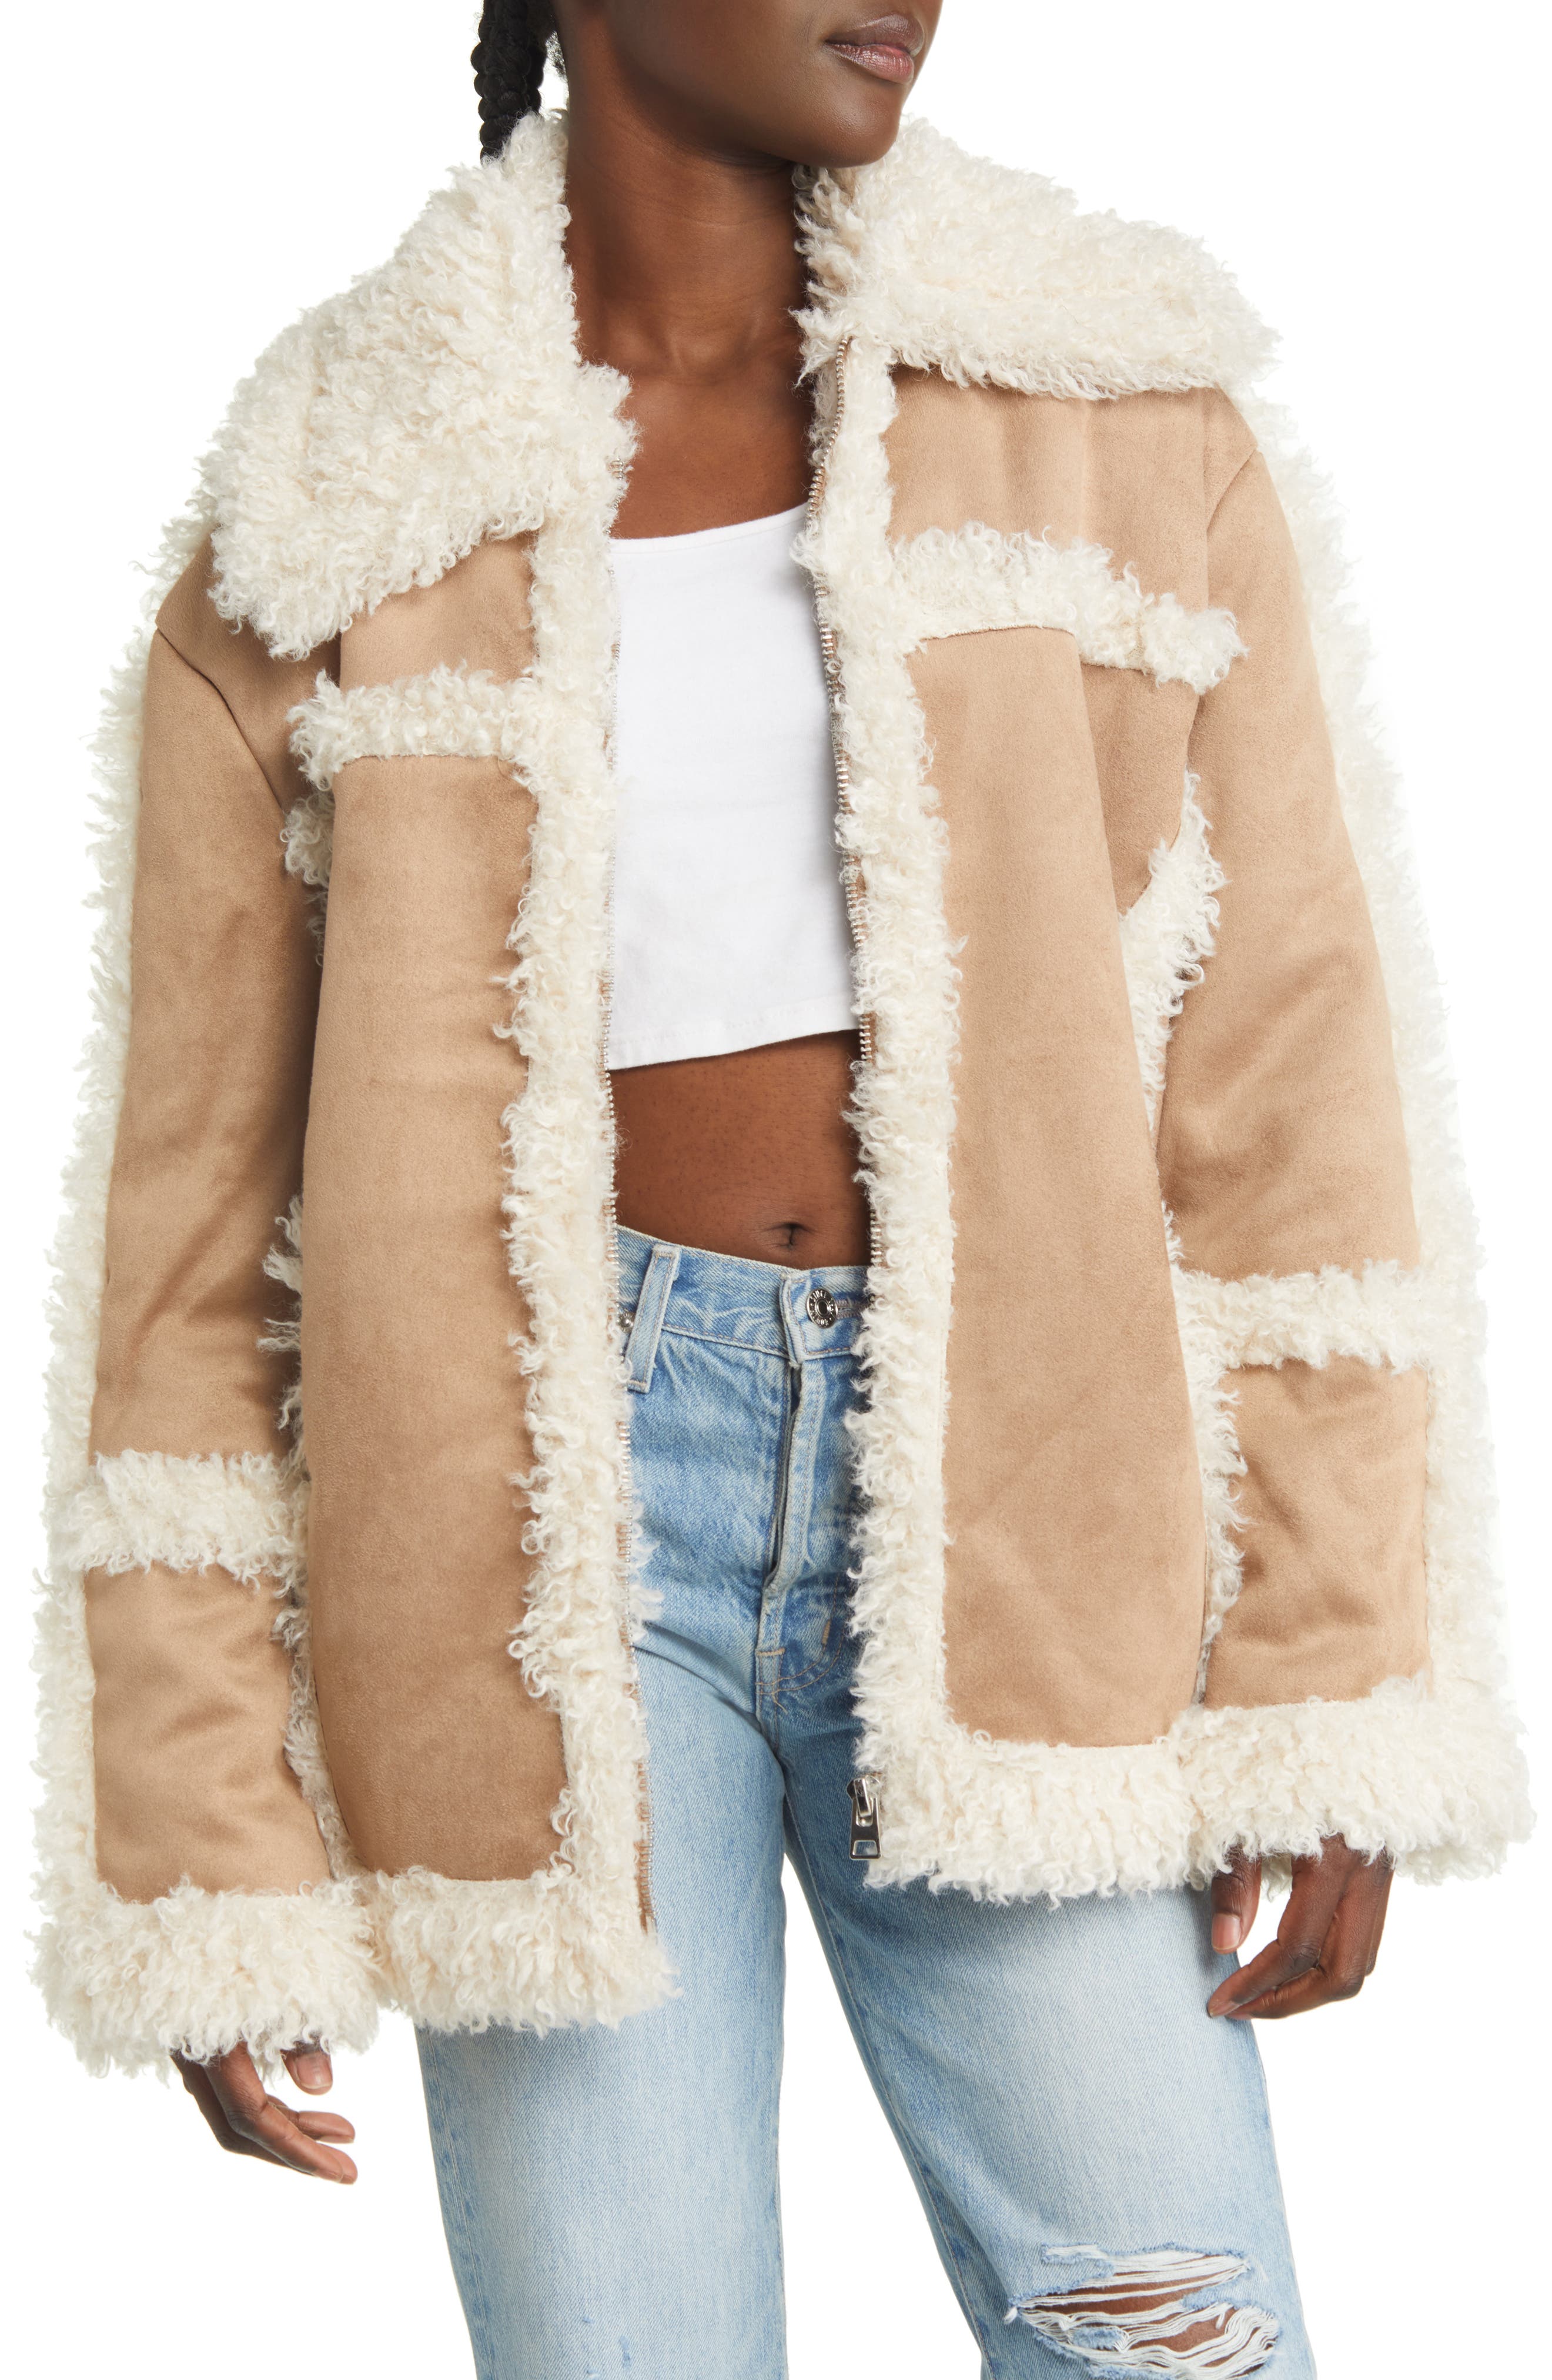 URBAN MIST Soft Faux Fur Multi Colour Gilet Luxury Women's Warm Winter Outwear 